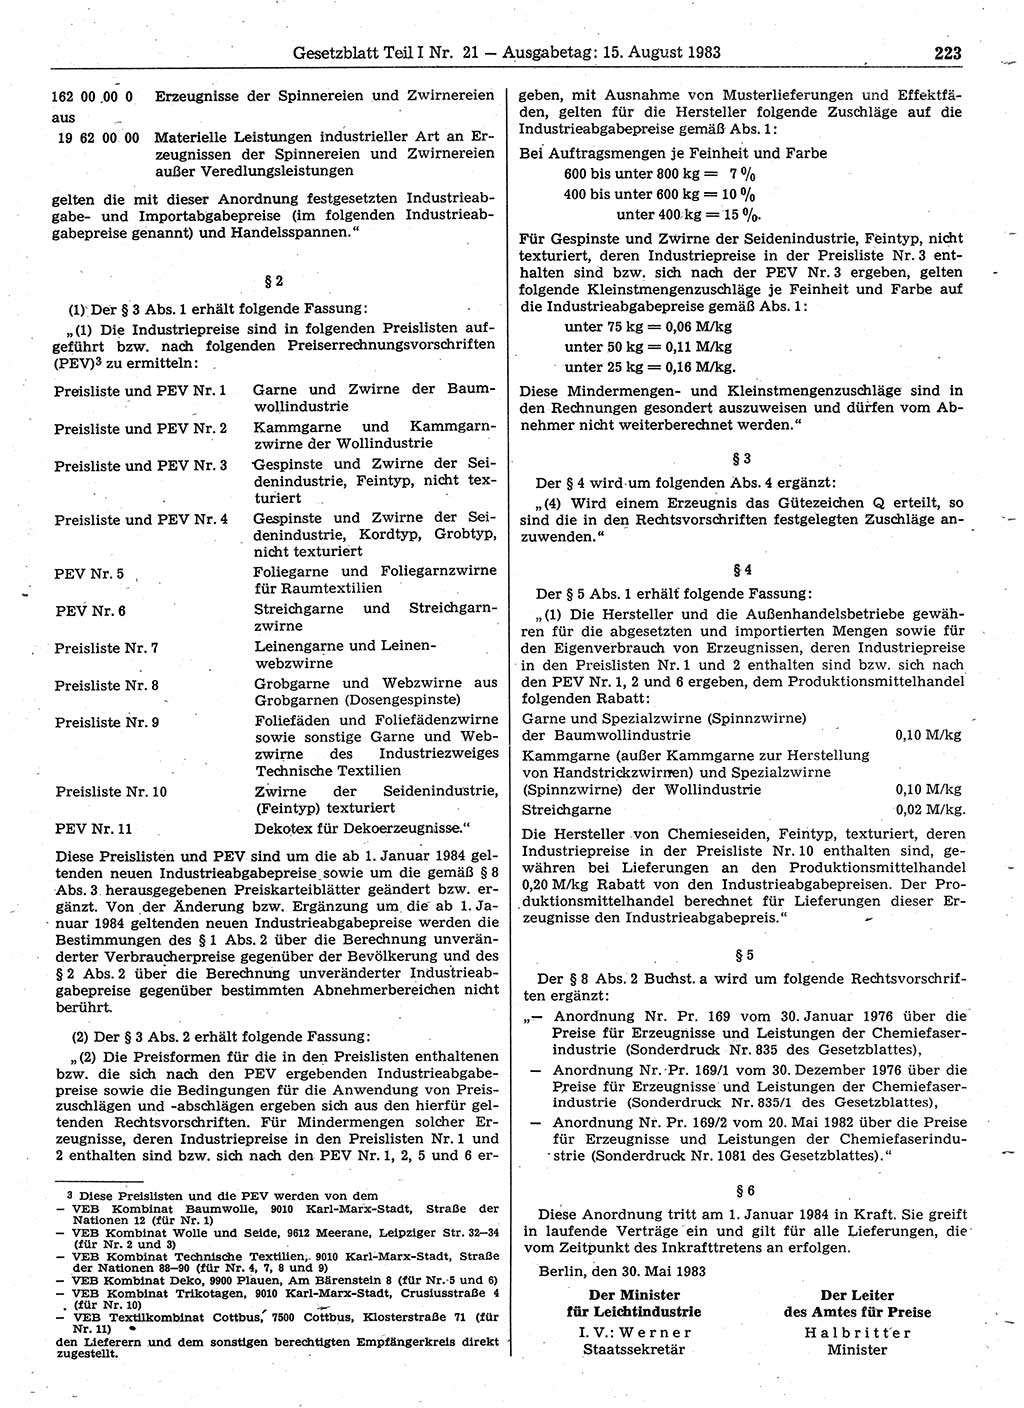 Gesetzblatt (GBl.) der Deutschen Demokratischen Republik (DDR) Teil Ⅰ 1983, Seite 223 (GBl. DDR Ⅰ 1983, S. 223)